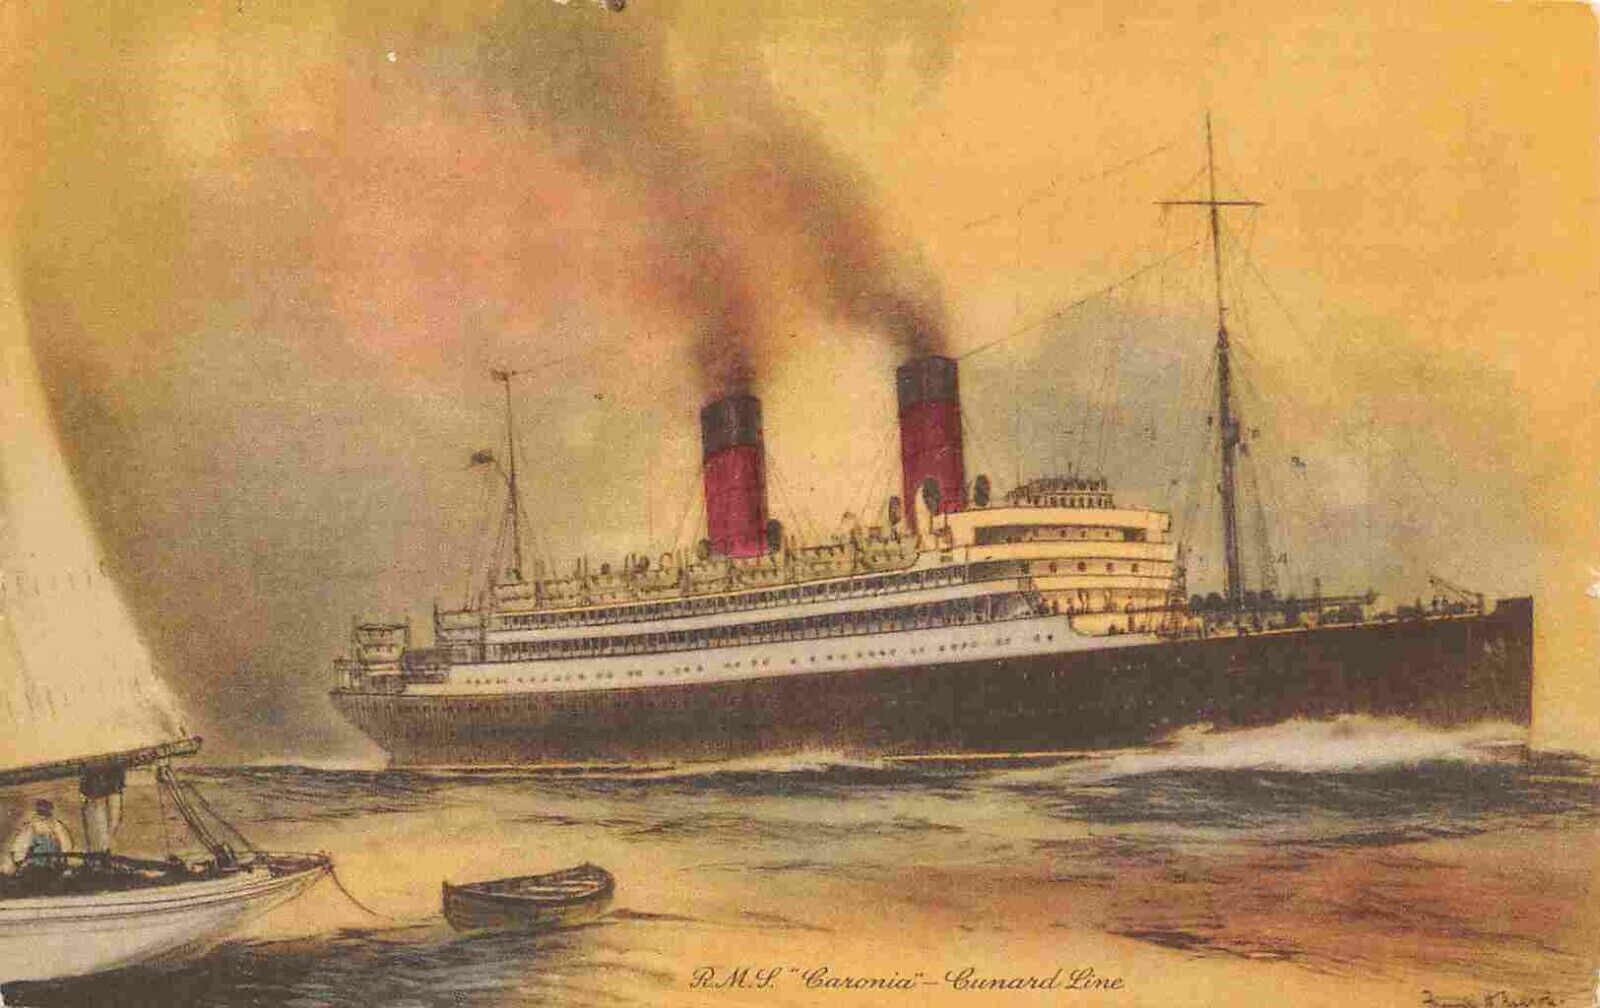 RMS Caronia Ship Cunard Line Thomas Cook & Son advertising 1932 postcard